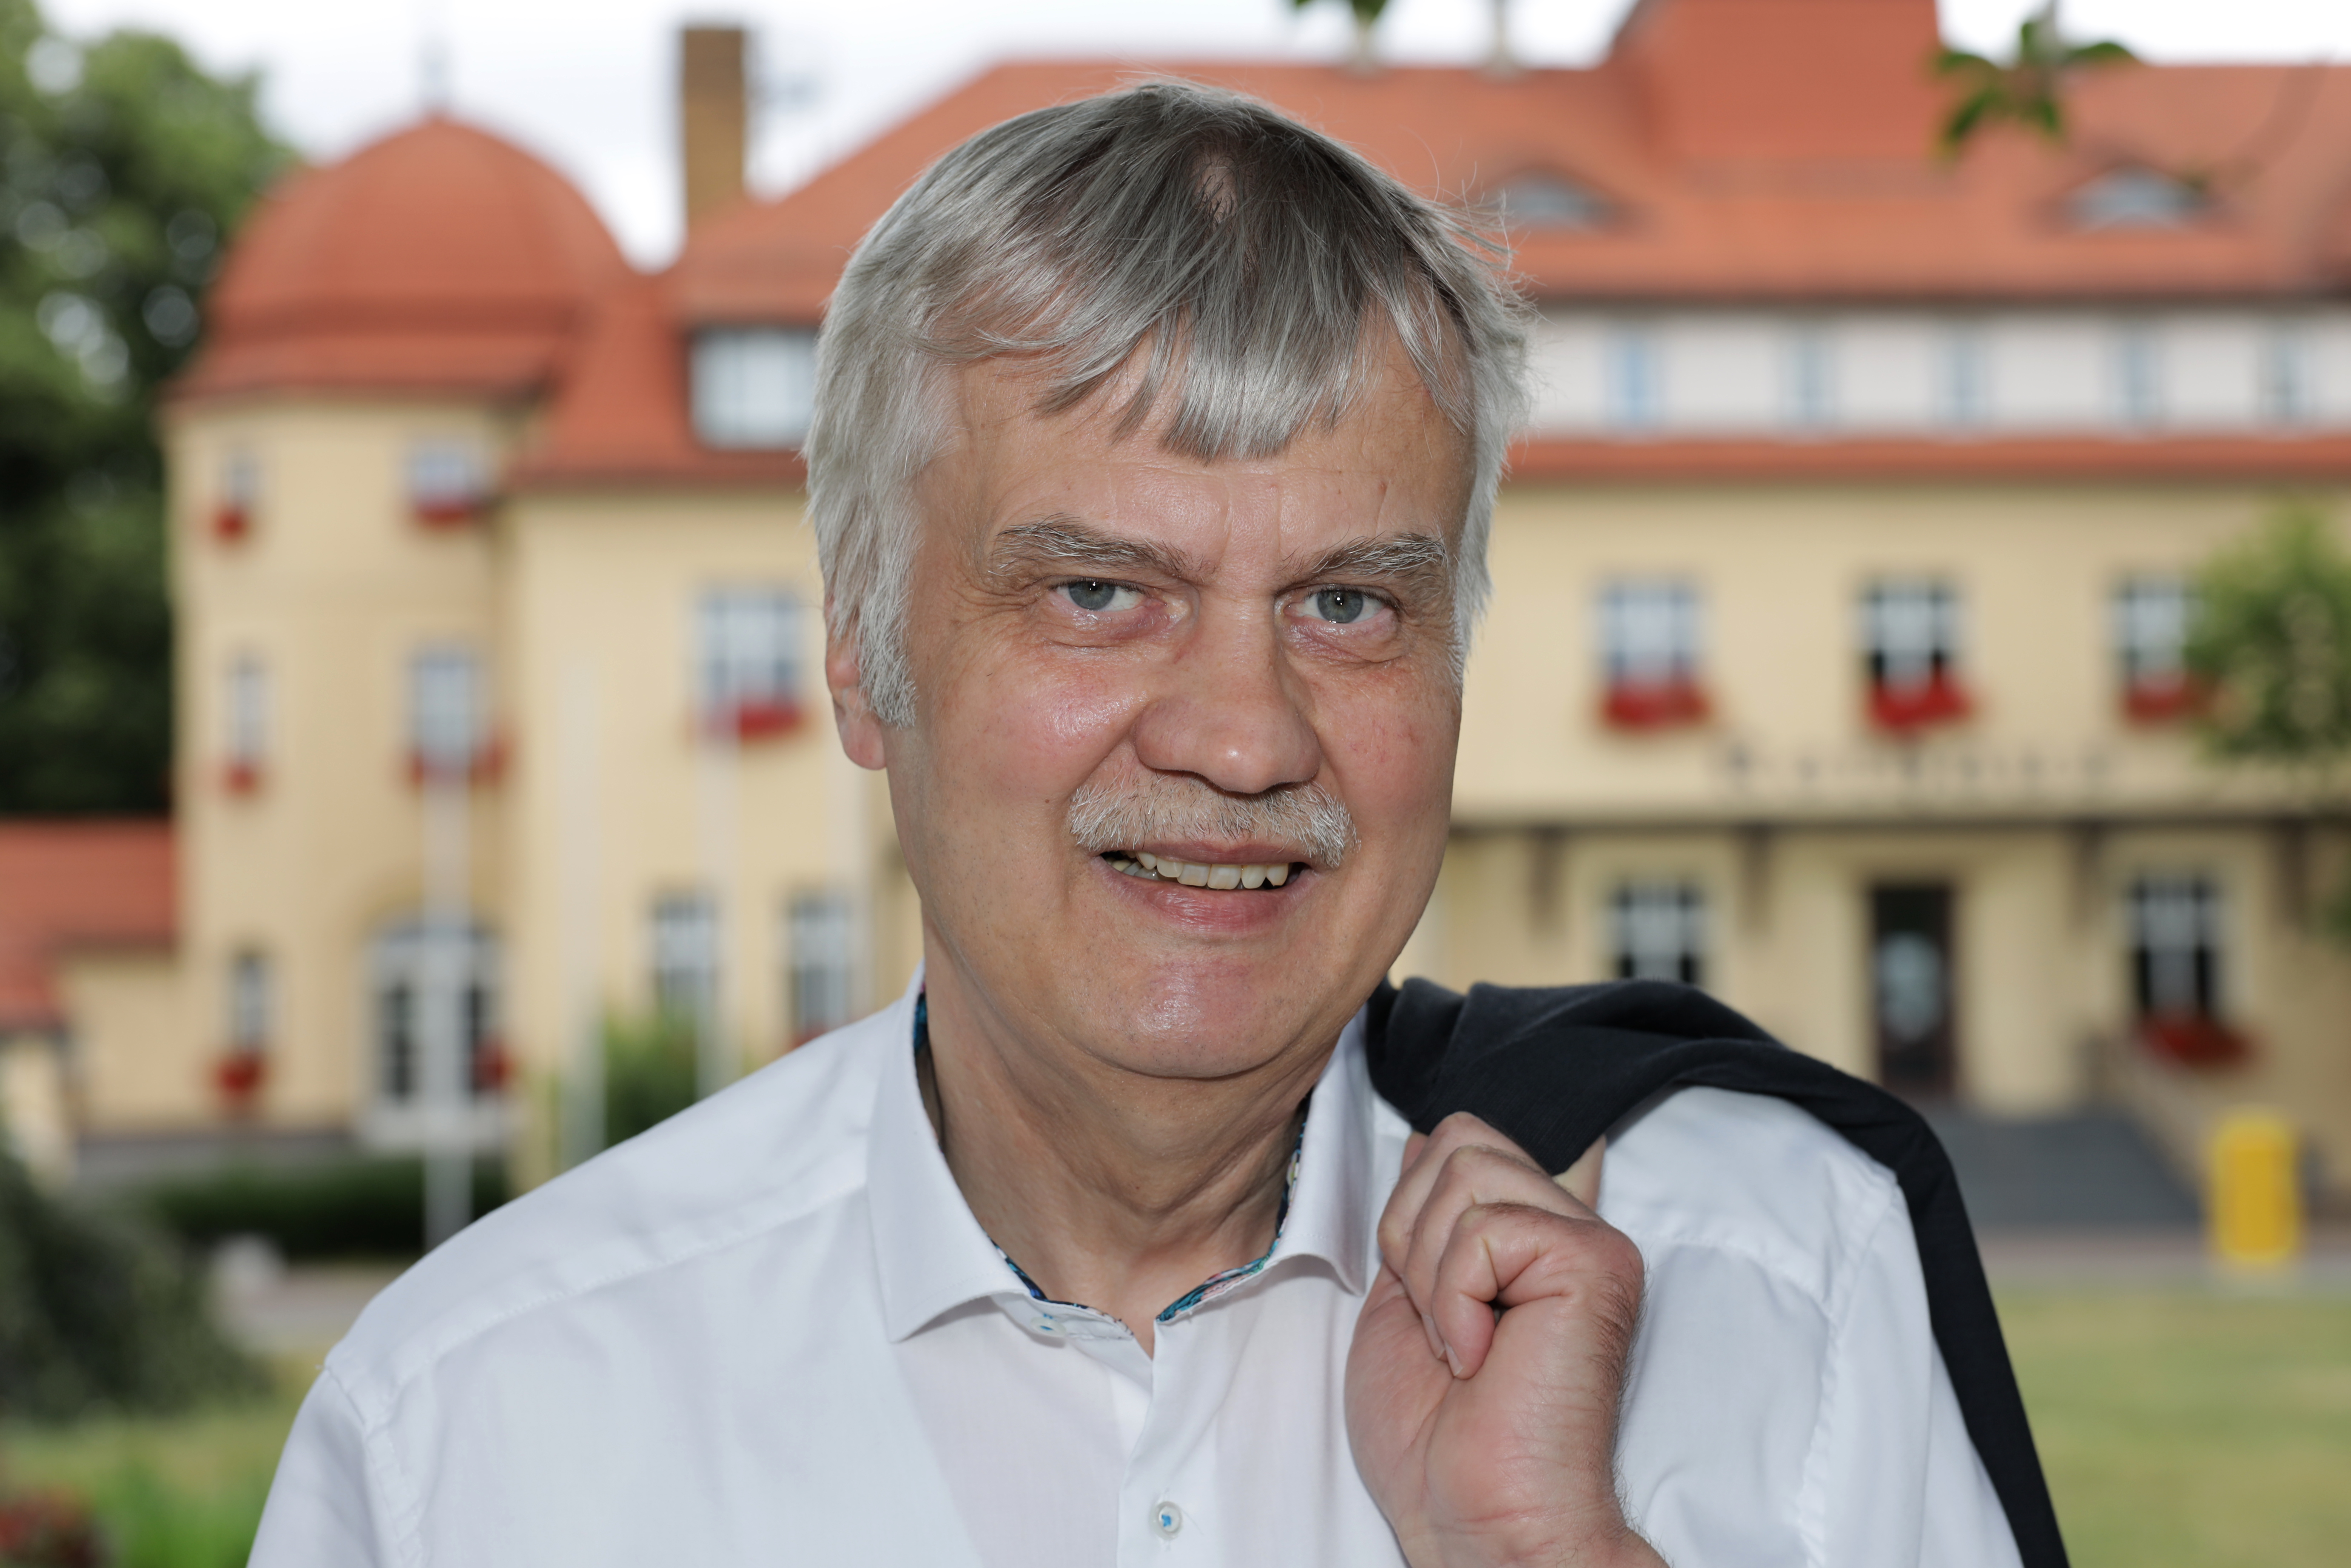   »Den Menschen ist nicht bewusst, wie unsere Demokratie funktioniert« | Markkleebergs Oberbürgermeister über Querdenken und Besucher aus Connewitz  